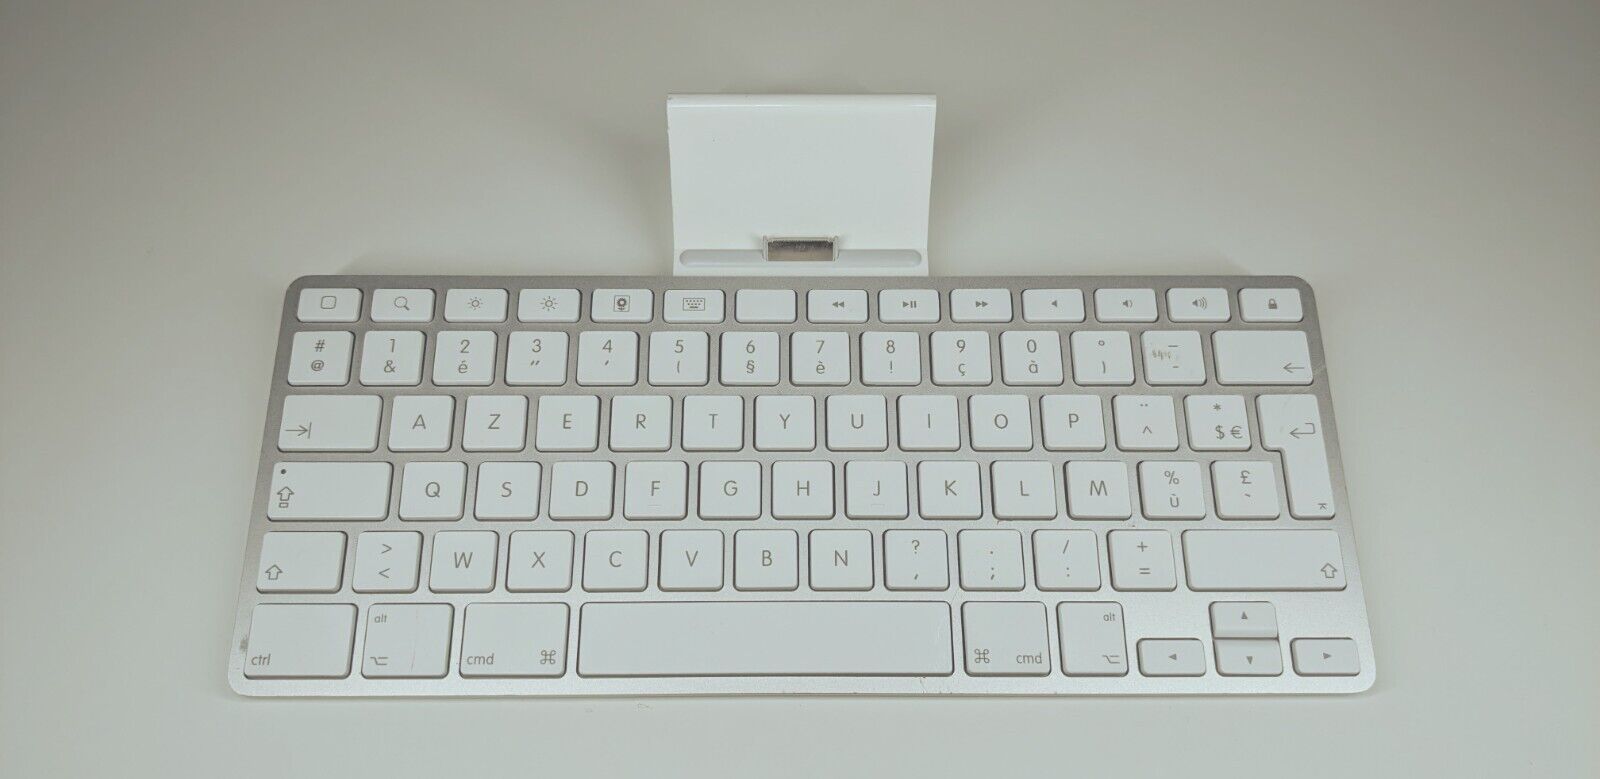 Apple Ipad Keyboard Dock (Model: A1359), White